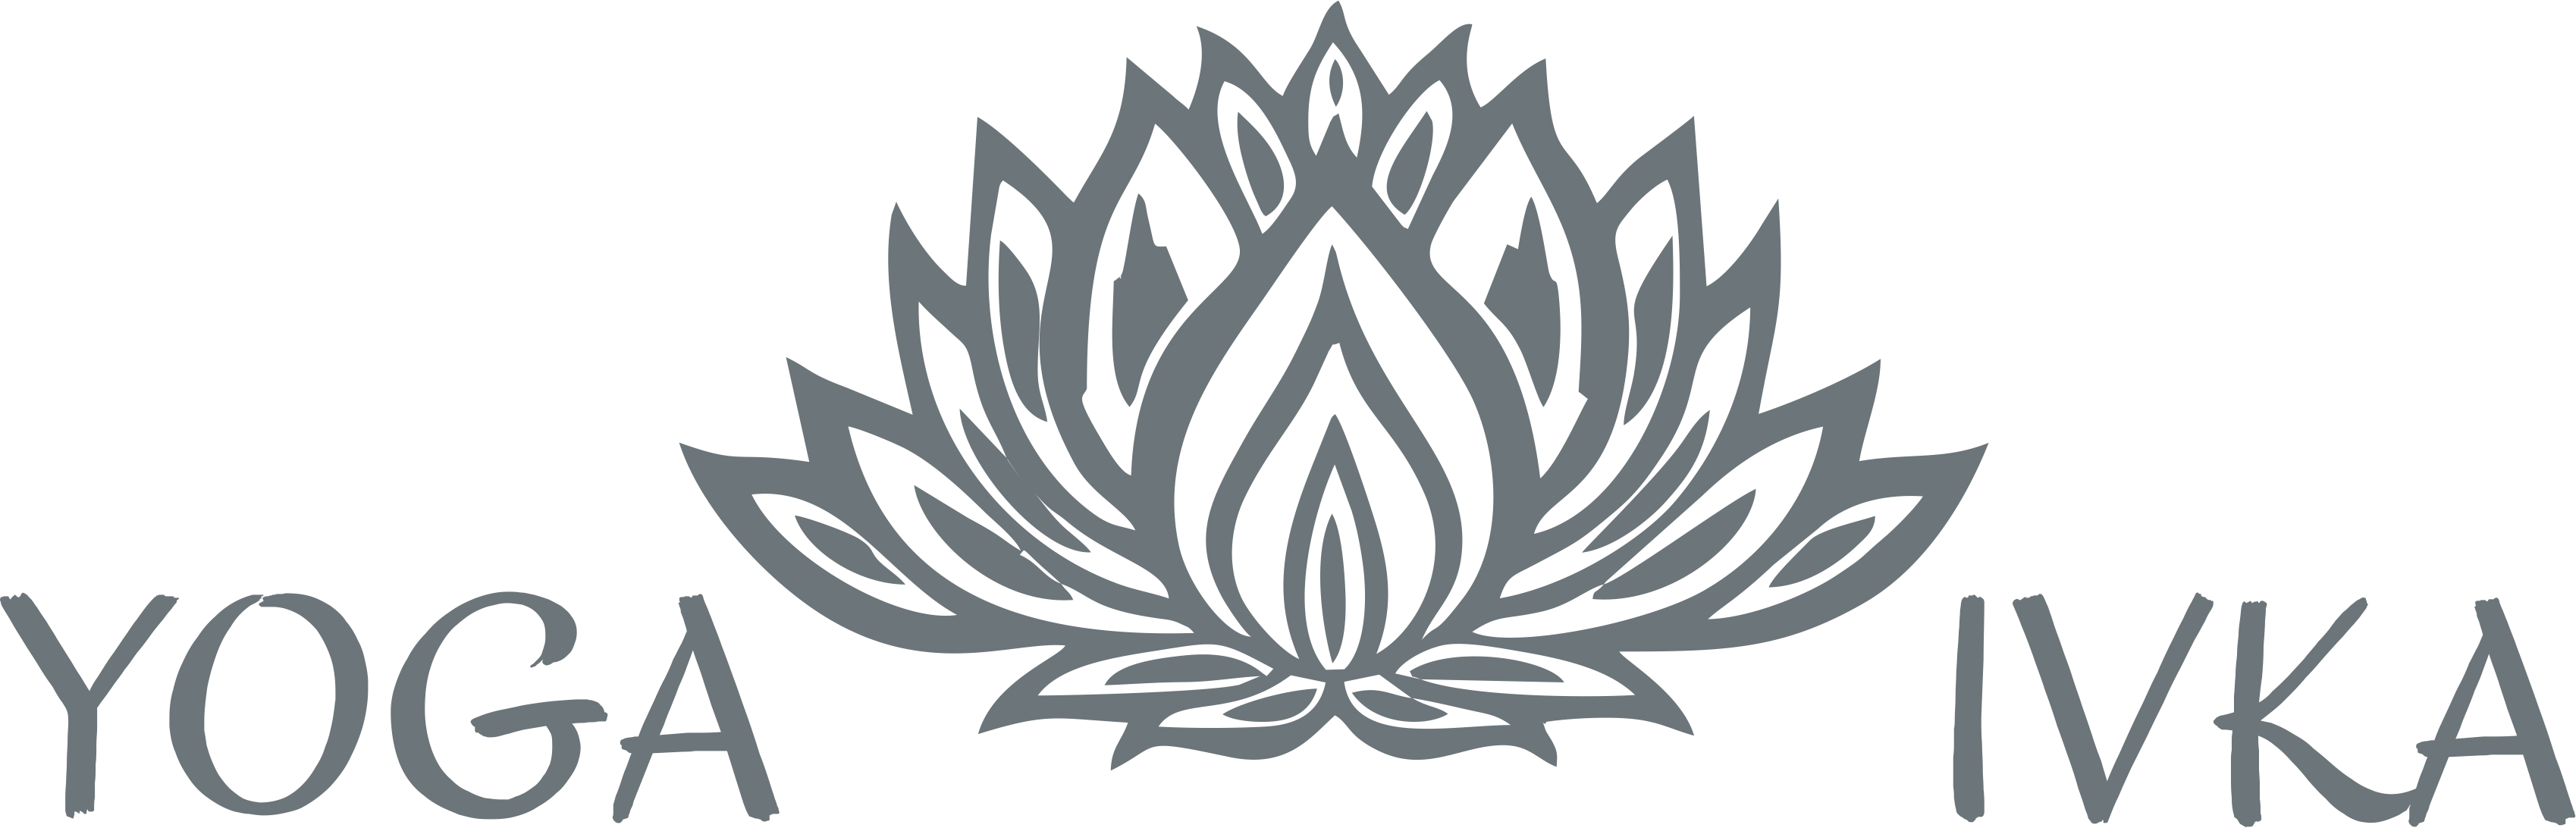 logo www.yoga-ivka.cz